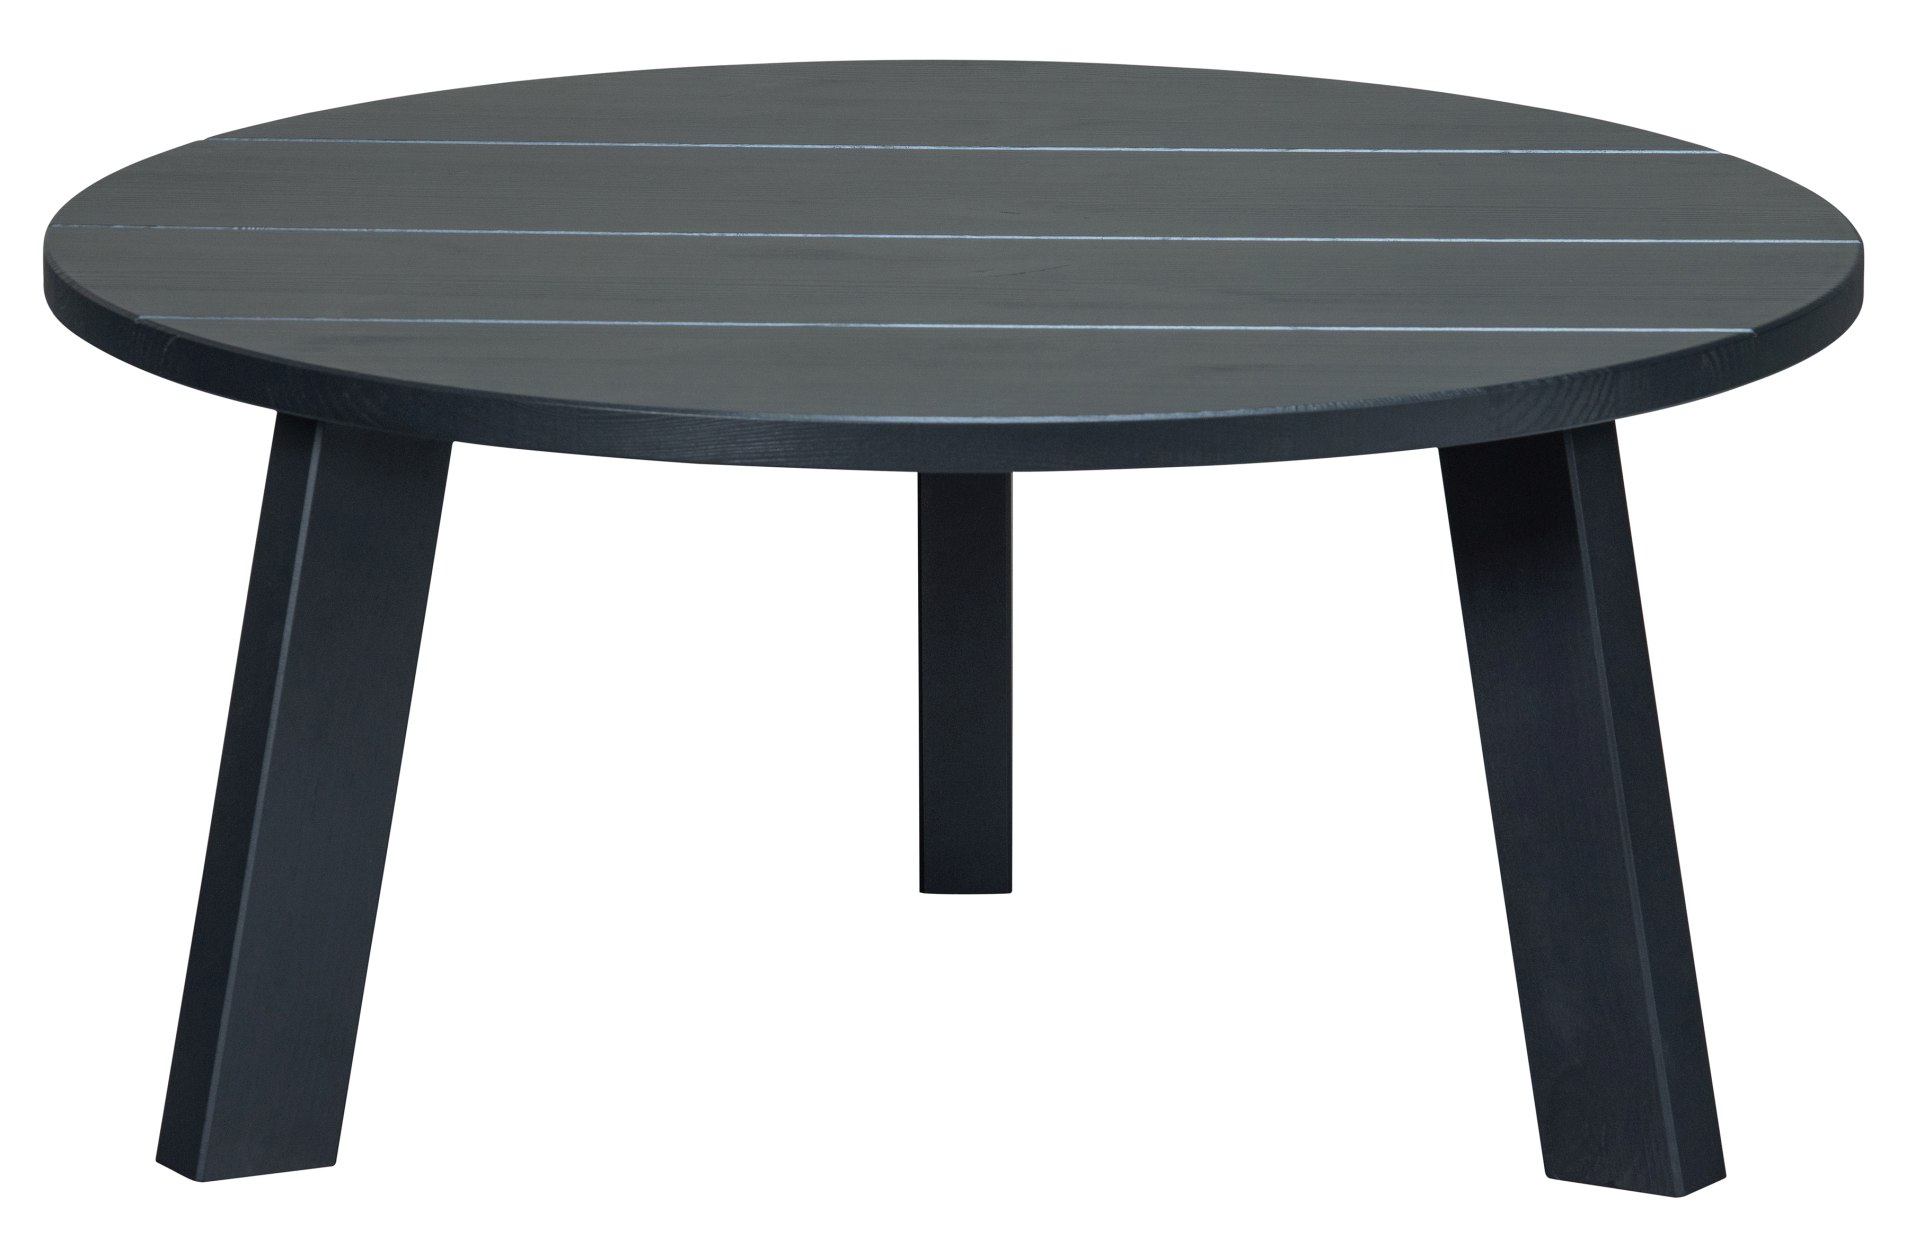 Der Beistelltisch Benson hat ein Durchmesser von 80 cm. Gefertigt wurde der Tisch aus Kiefernholz und hat einen schwarzen Farbton.